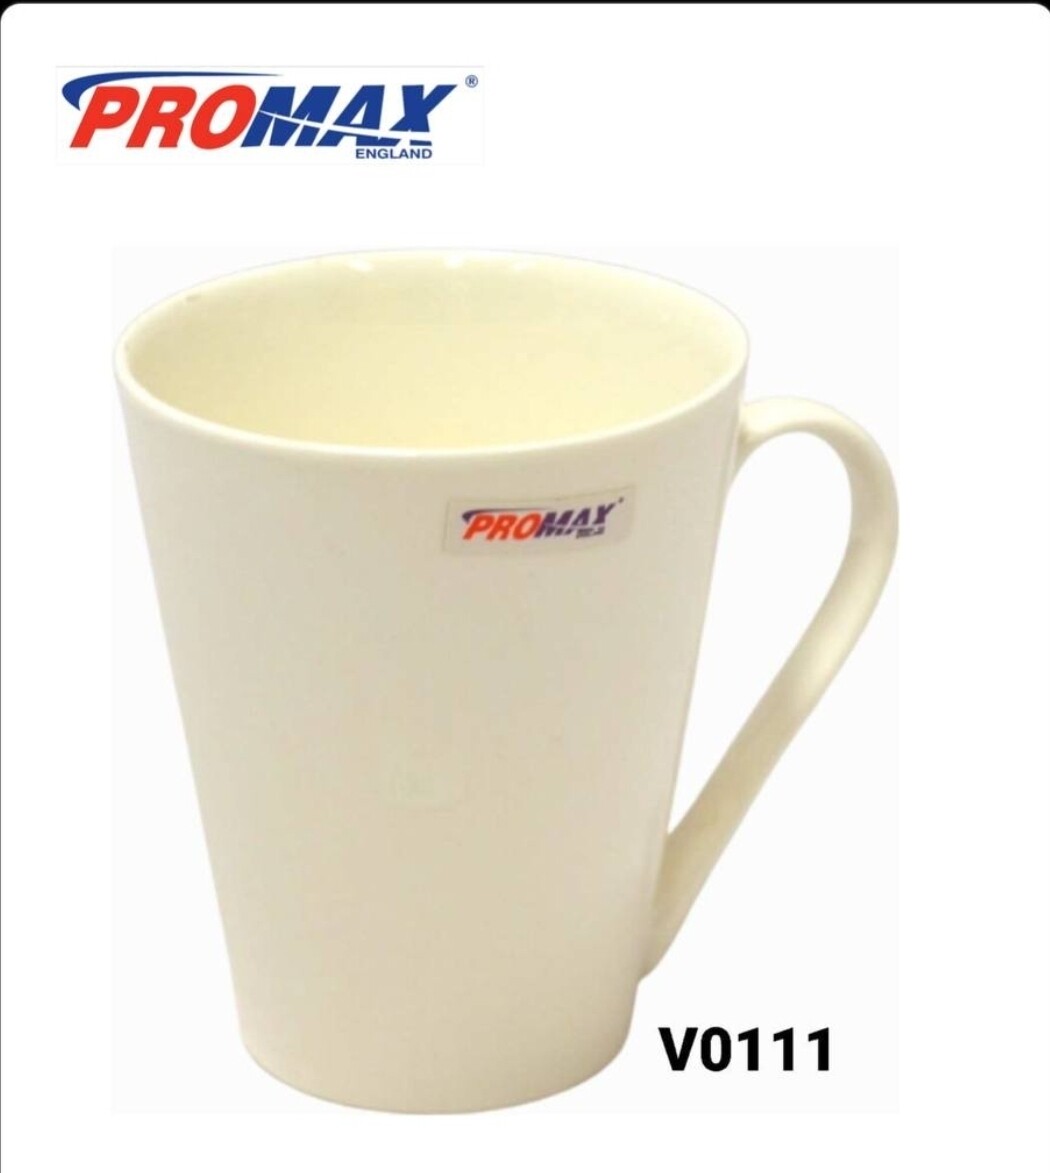 Promax ceramic white mug V0111